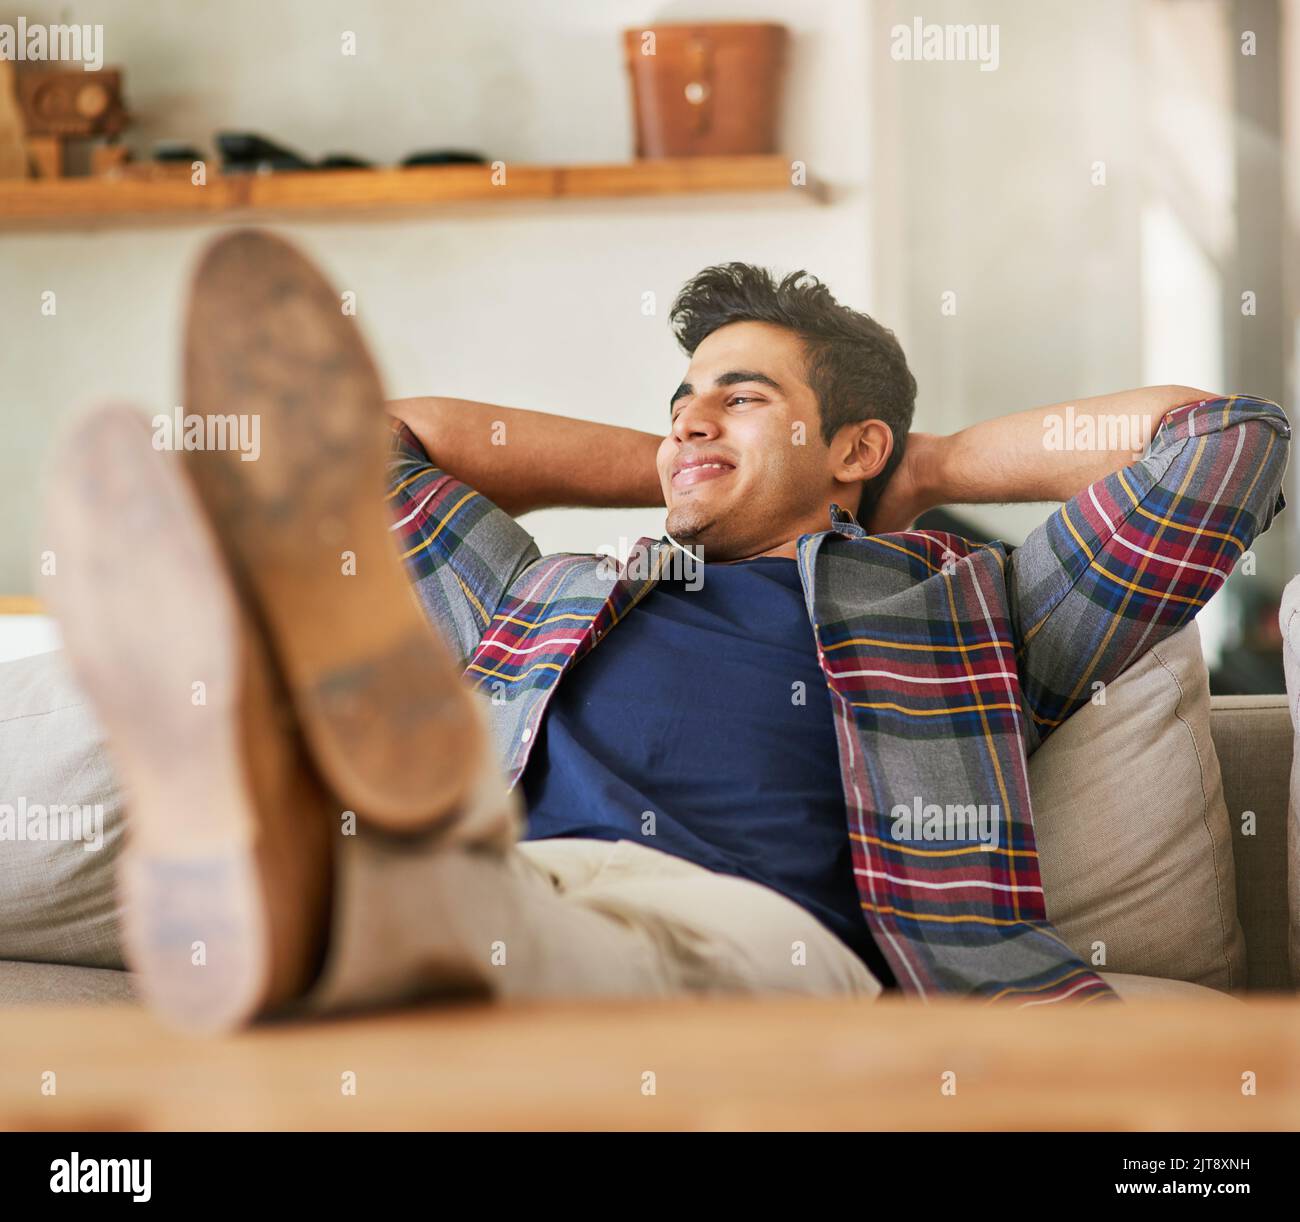 Komfort zu Hause. Ein hübscher junger Mann, der sich zu Hause auf dem Sofa entspannt. Stockfoto